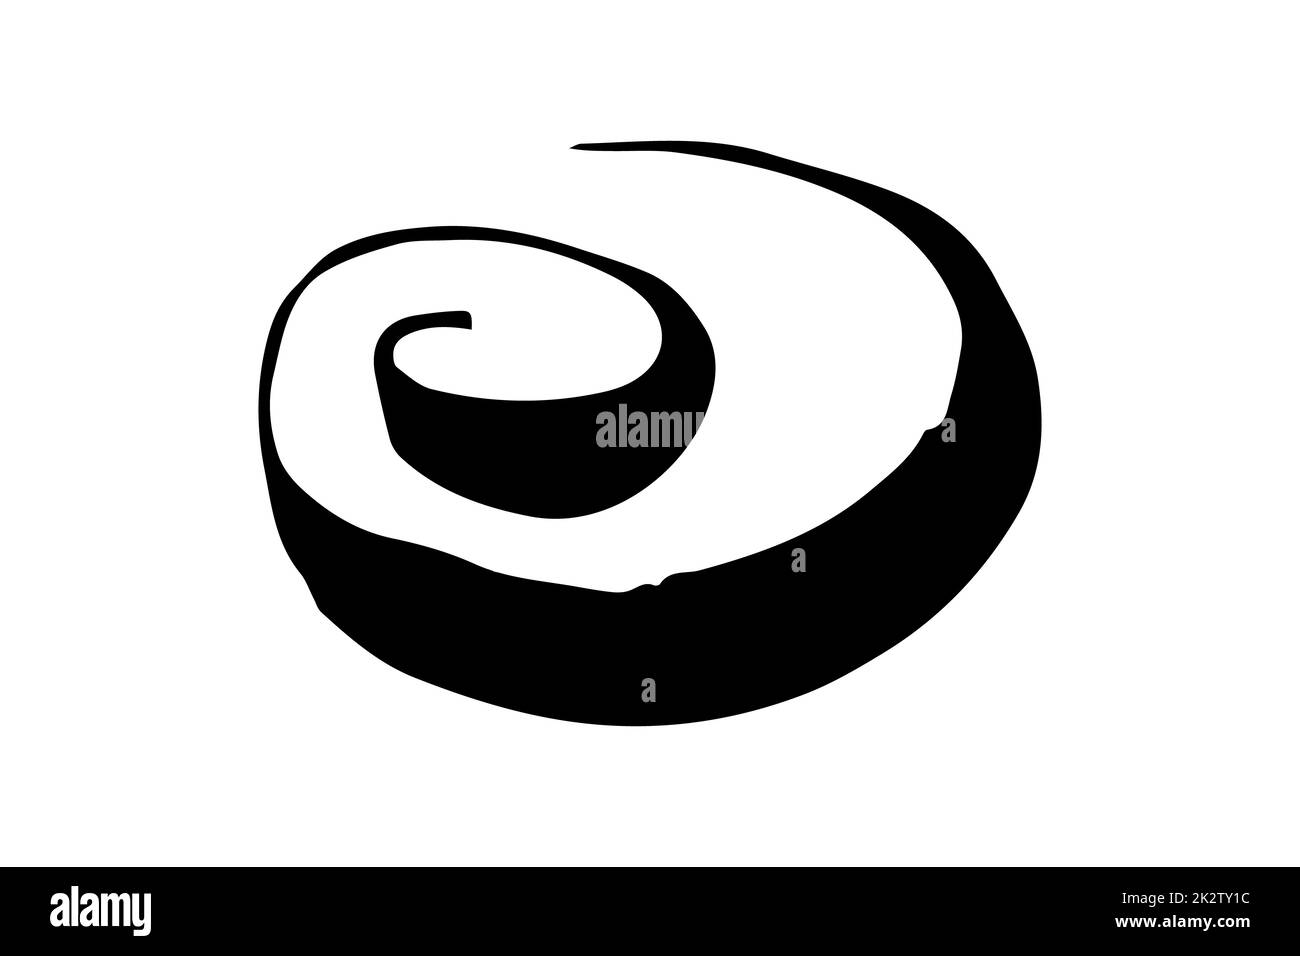 Round swirl symbol, hand painted with ink brush Stock Photo